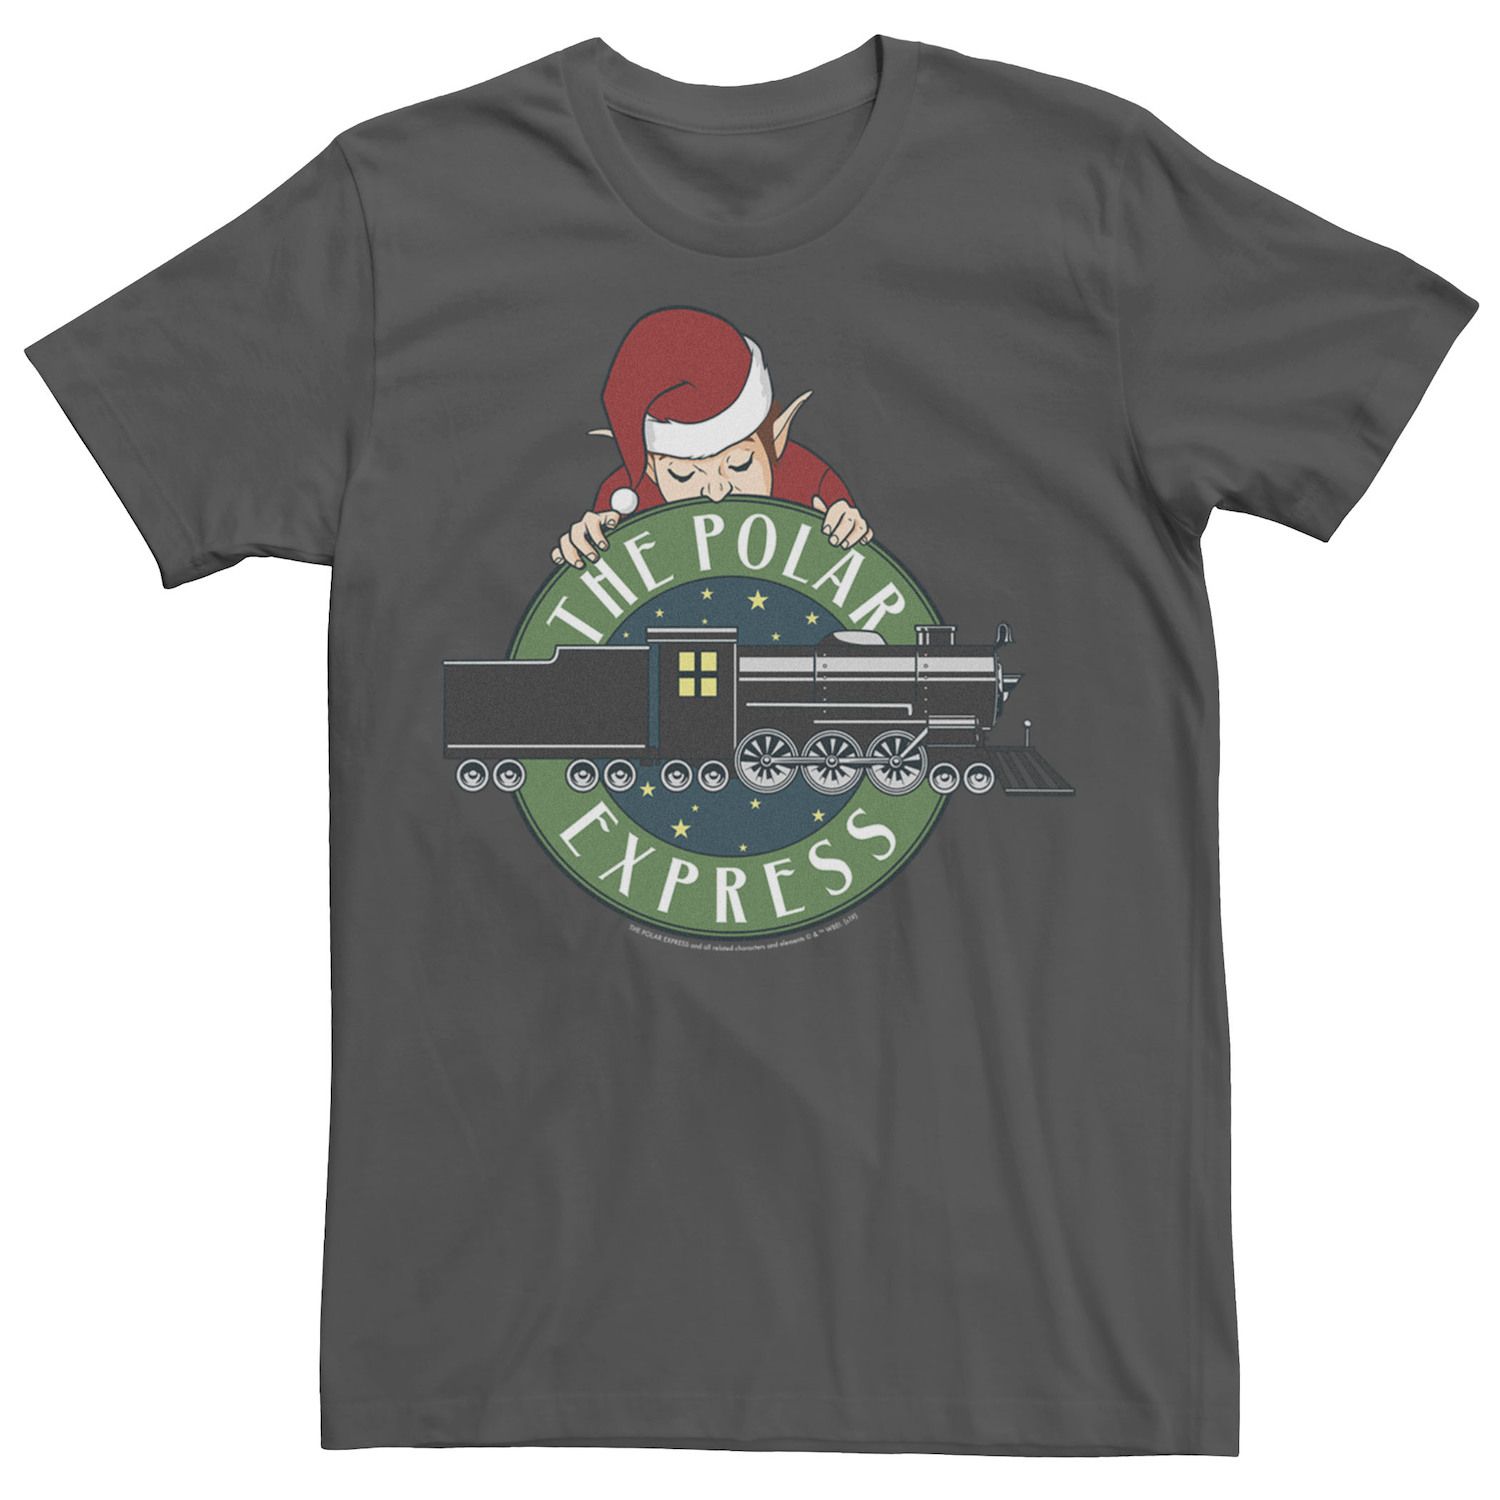 мужская футболка polar express santas sleigh licensed character Мужская футболка с логотипом The Polar Express Elf Train Licensed Character